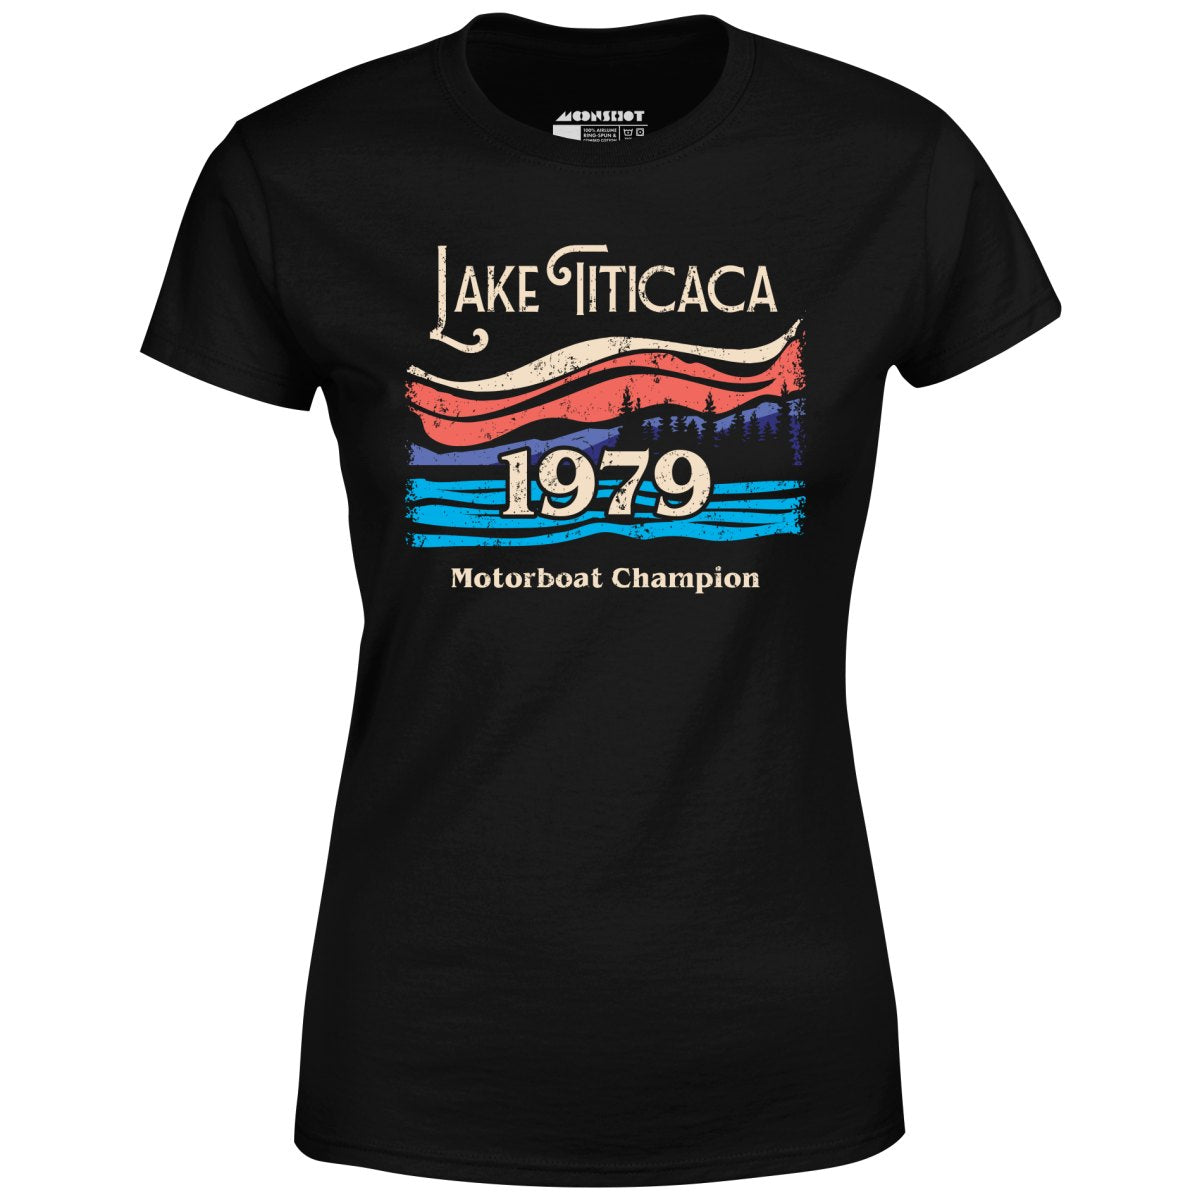 Lake Titicaca Motorboat Champion - Women's T-Shirt